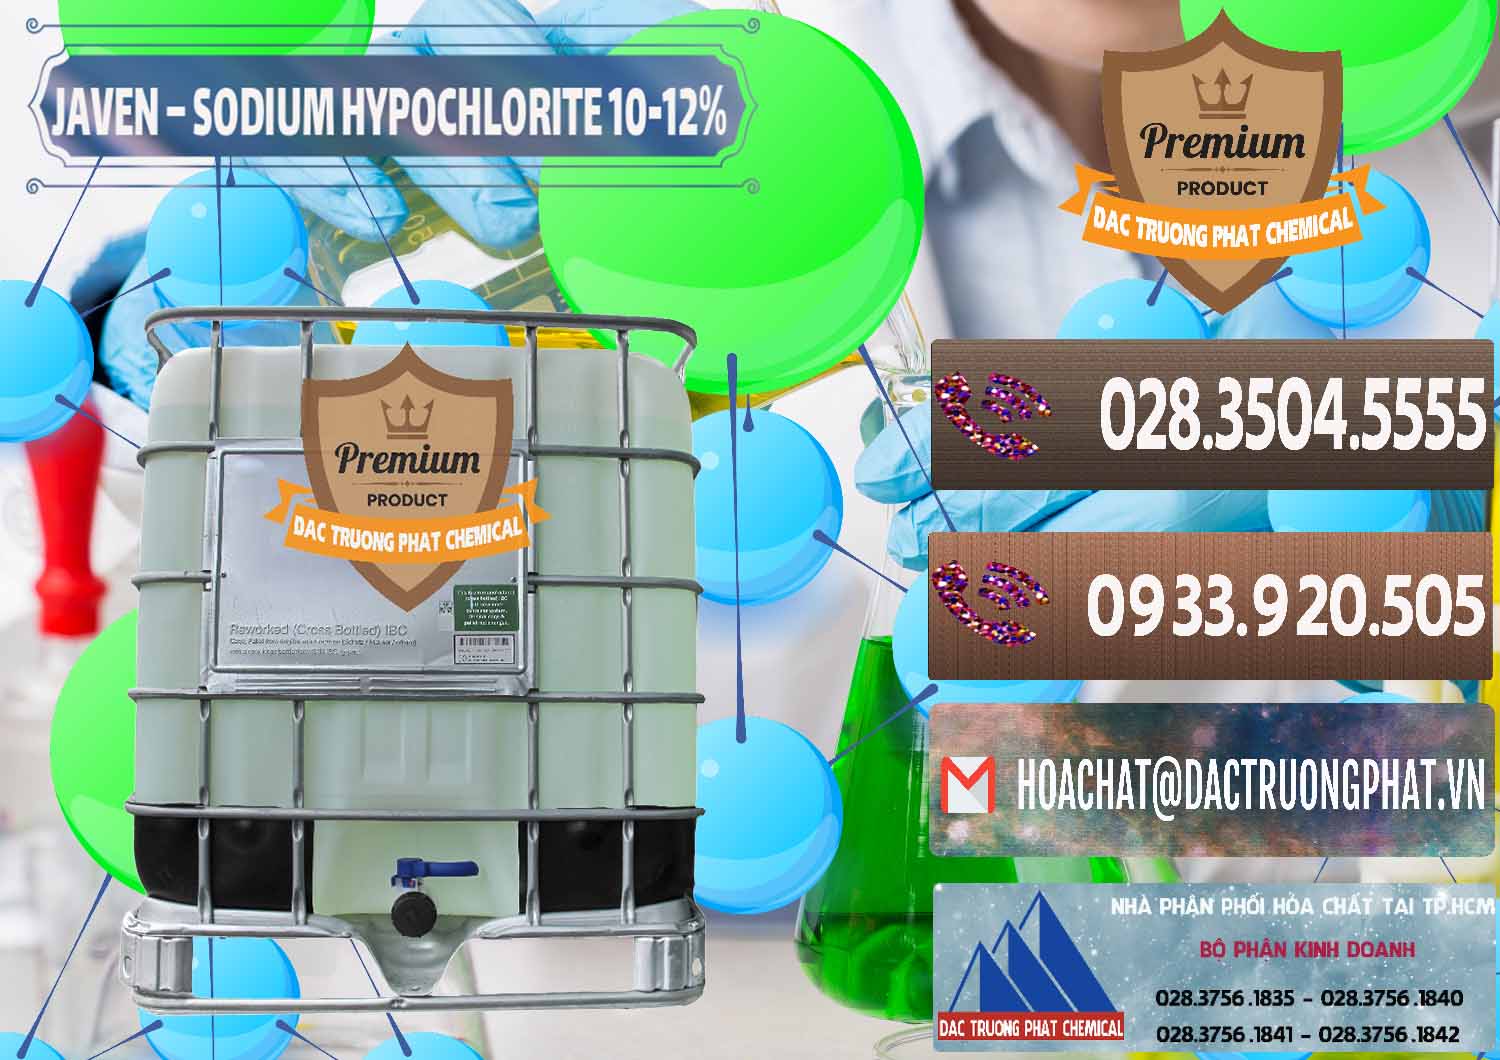 Công ty cung cấp & phân phối Javen - Sodium Hypochlorite 10-12% Việt Nam - 0188 - Chuyên phân phối và kinh doanh hóa chất tại TP.HCM - hoachatviet.net